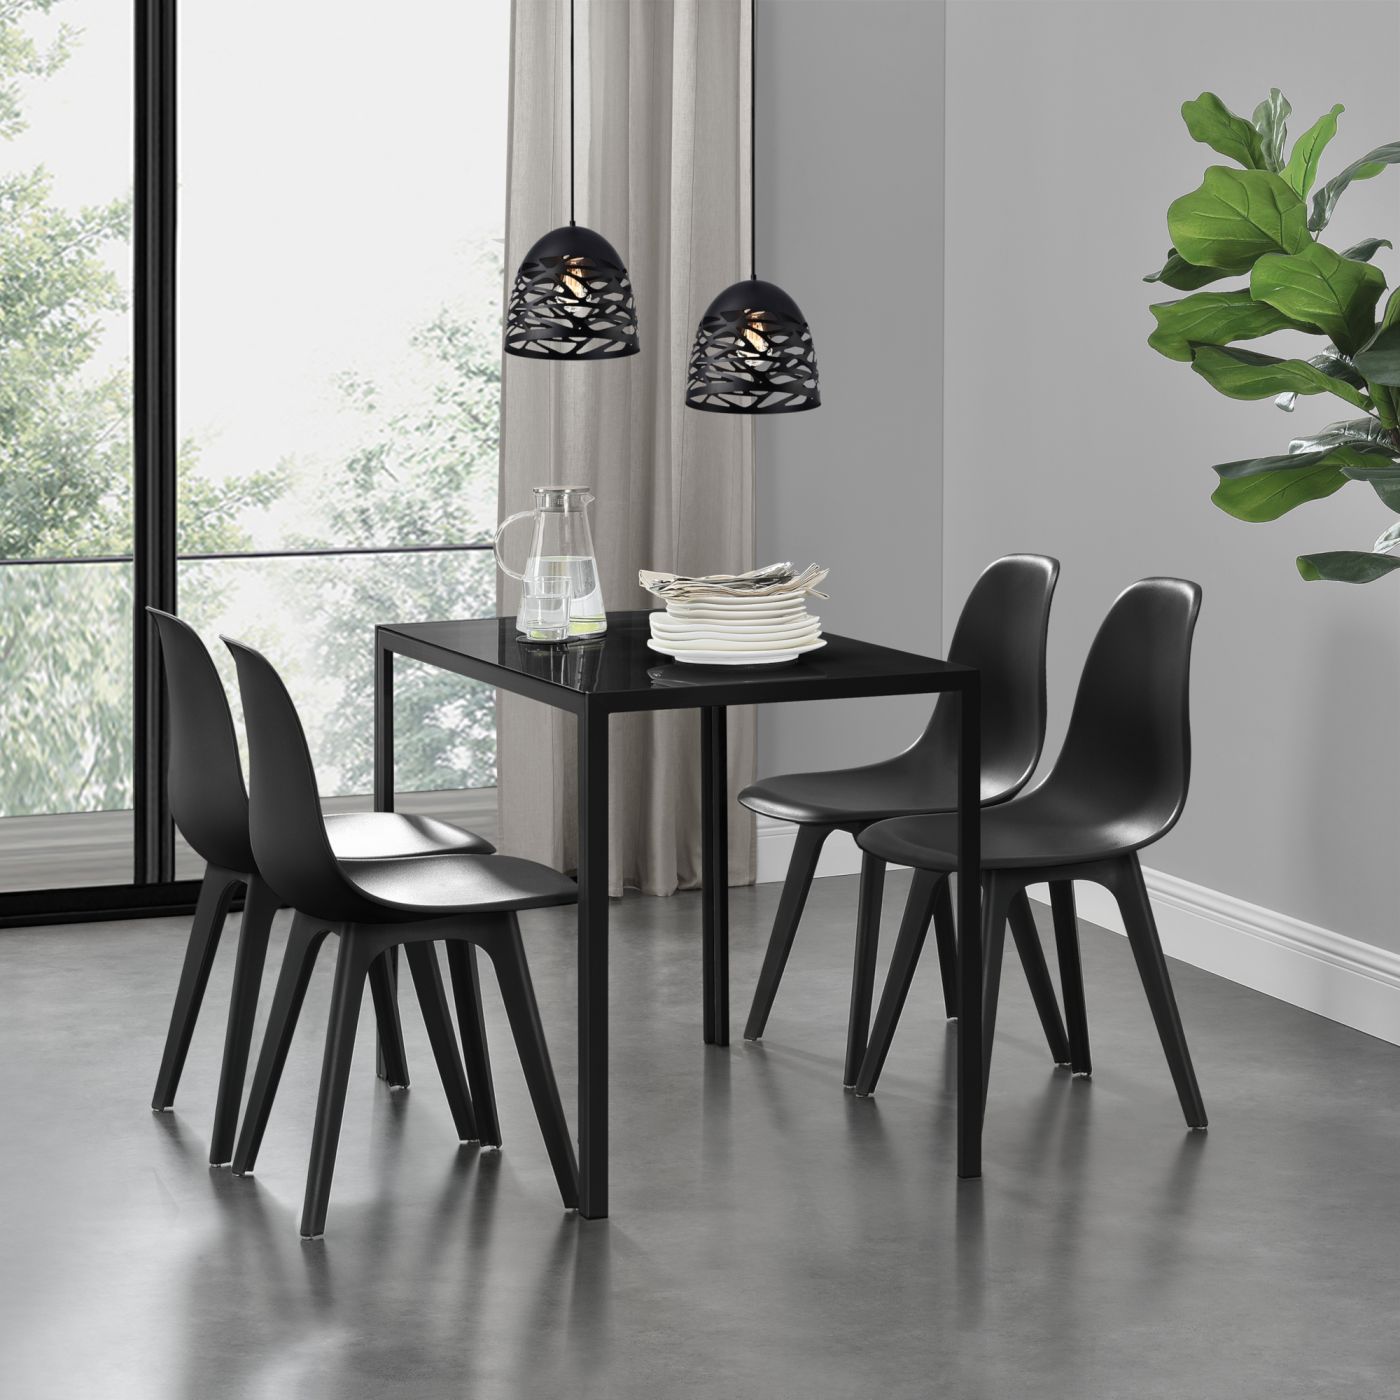 Delft glazen eettafel met 4 stoelen zwart |